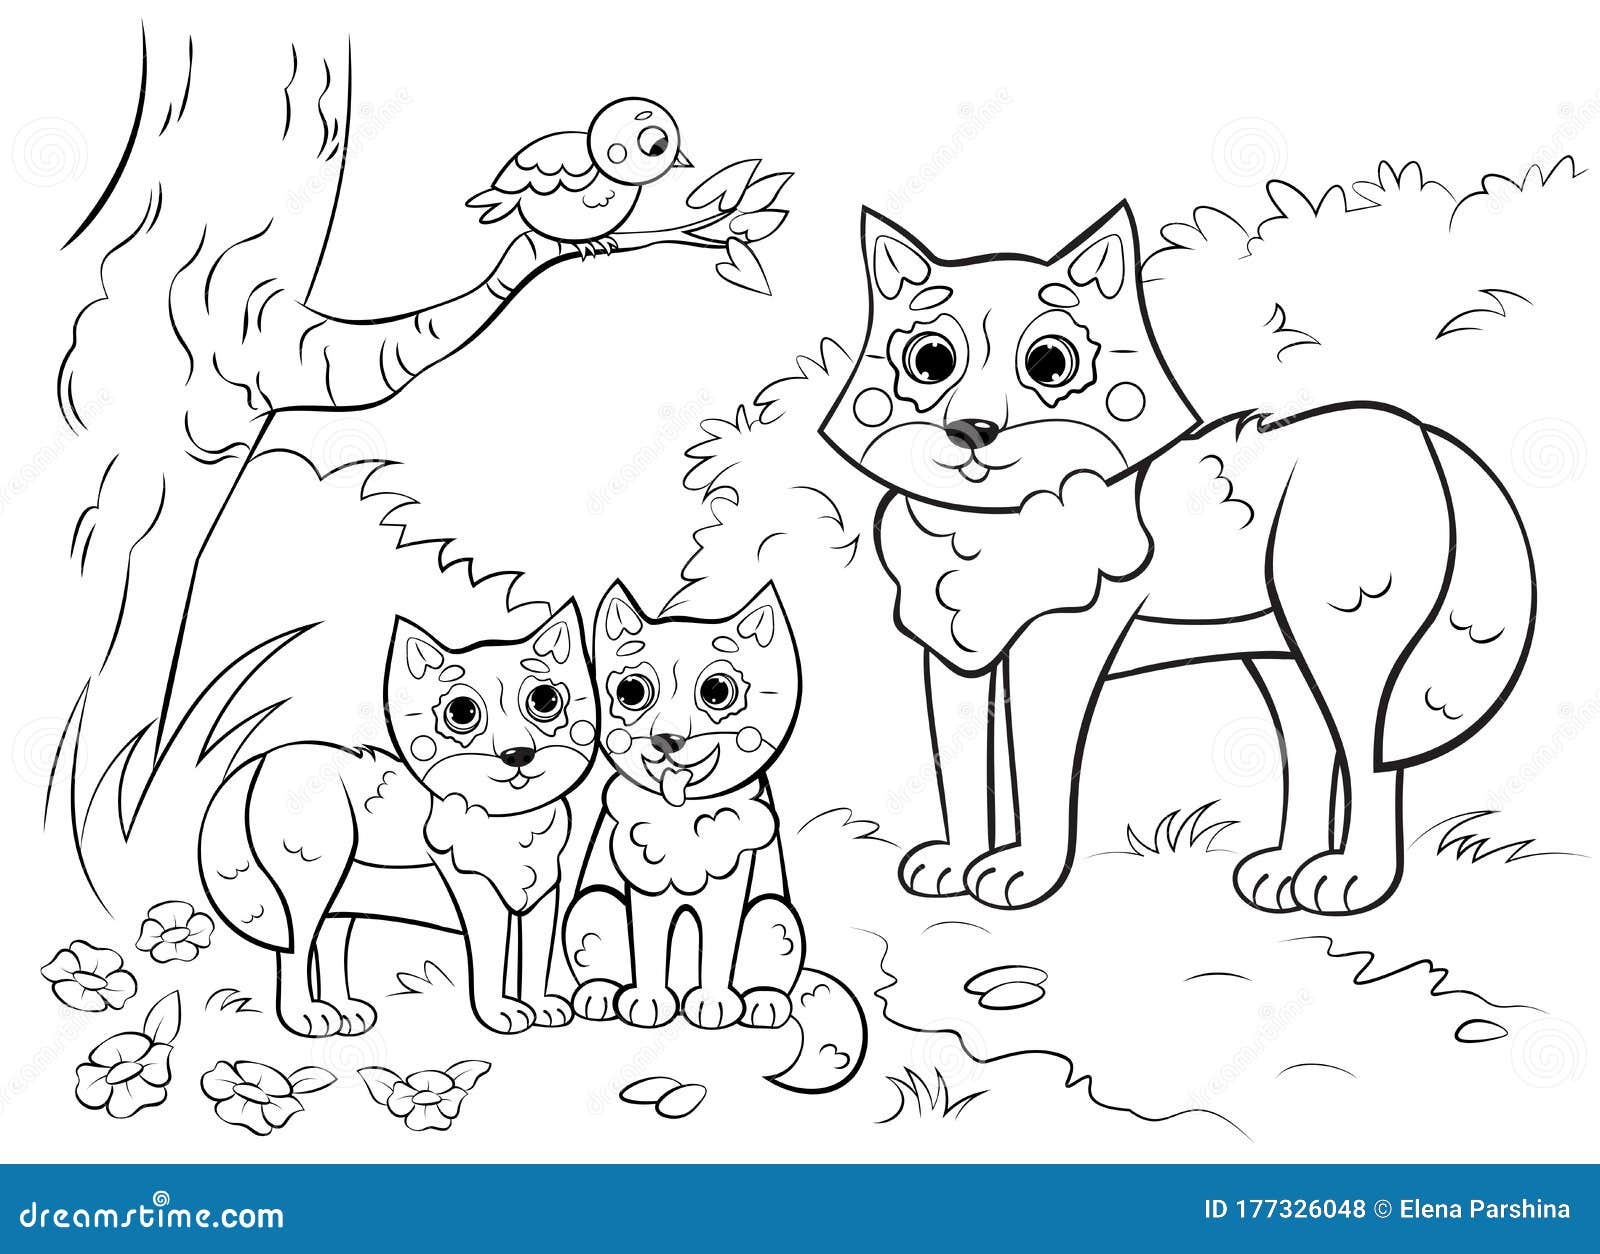 Desenhos para colorir de desenho de uma família cachorro para colorir  